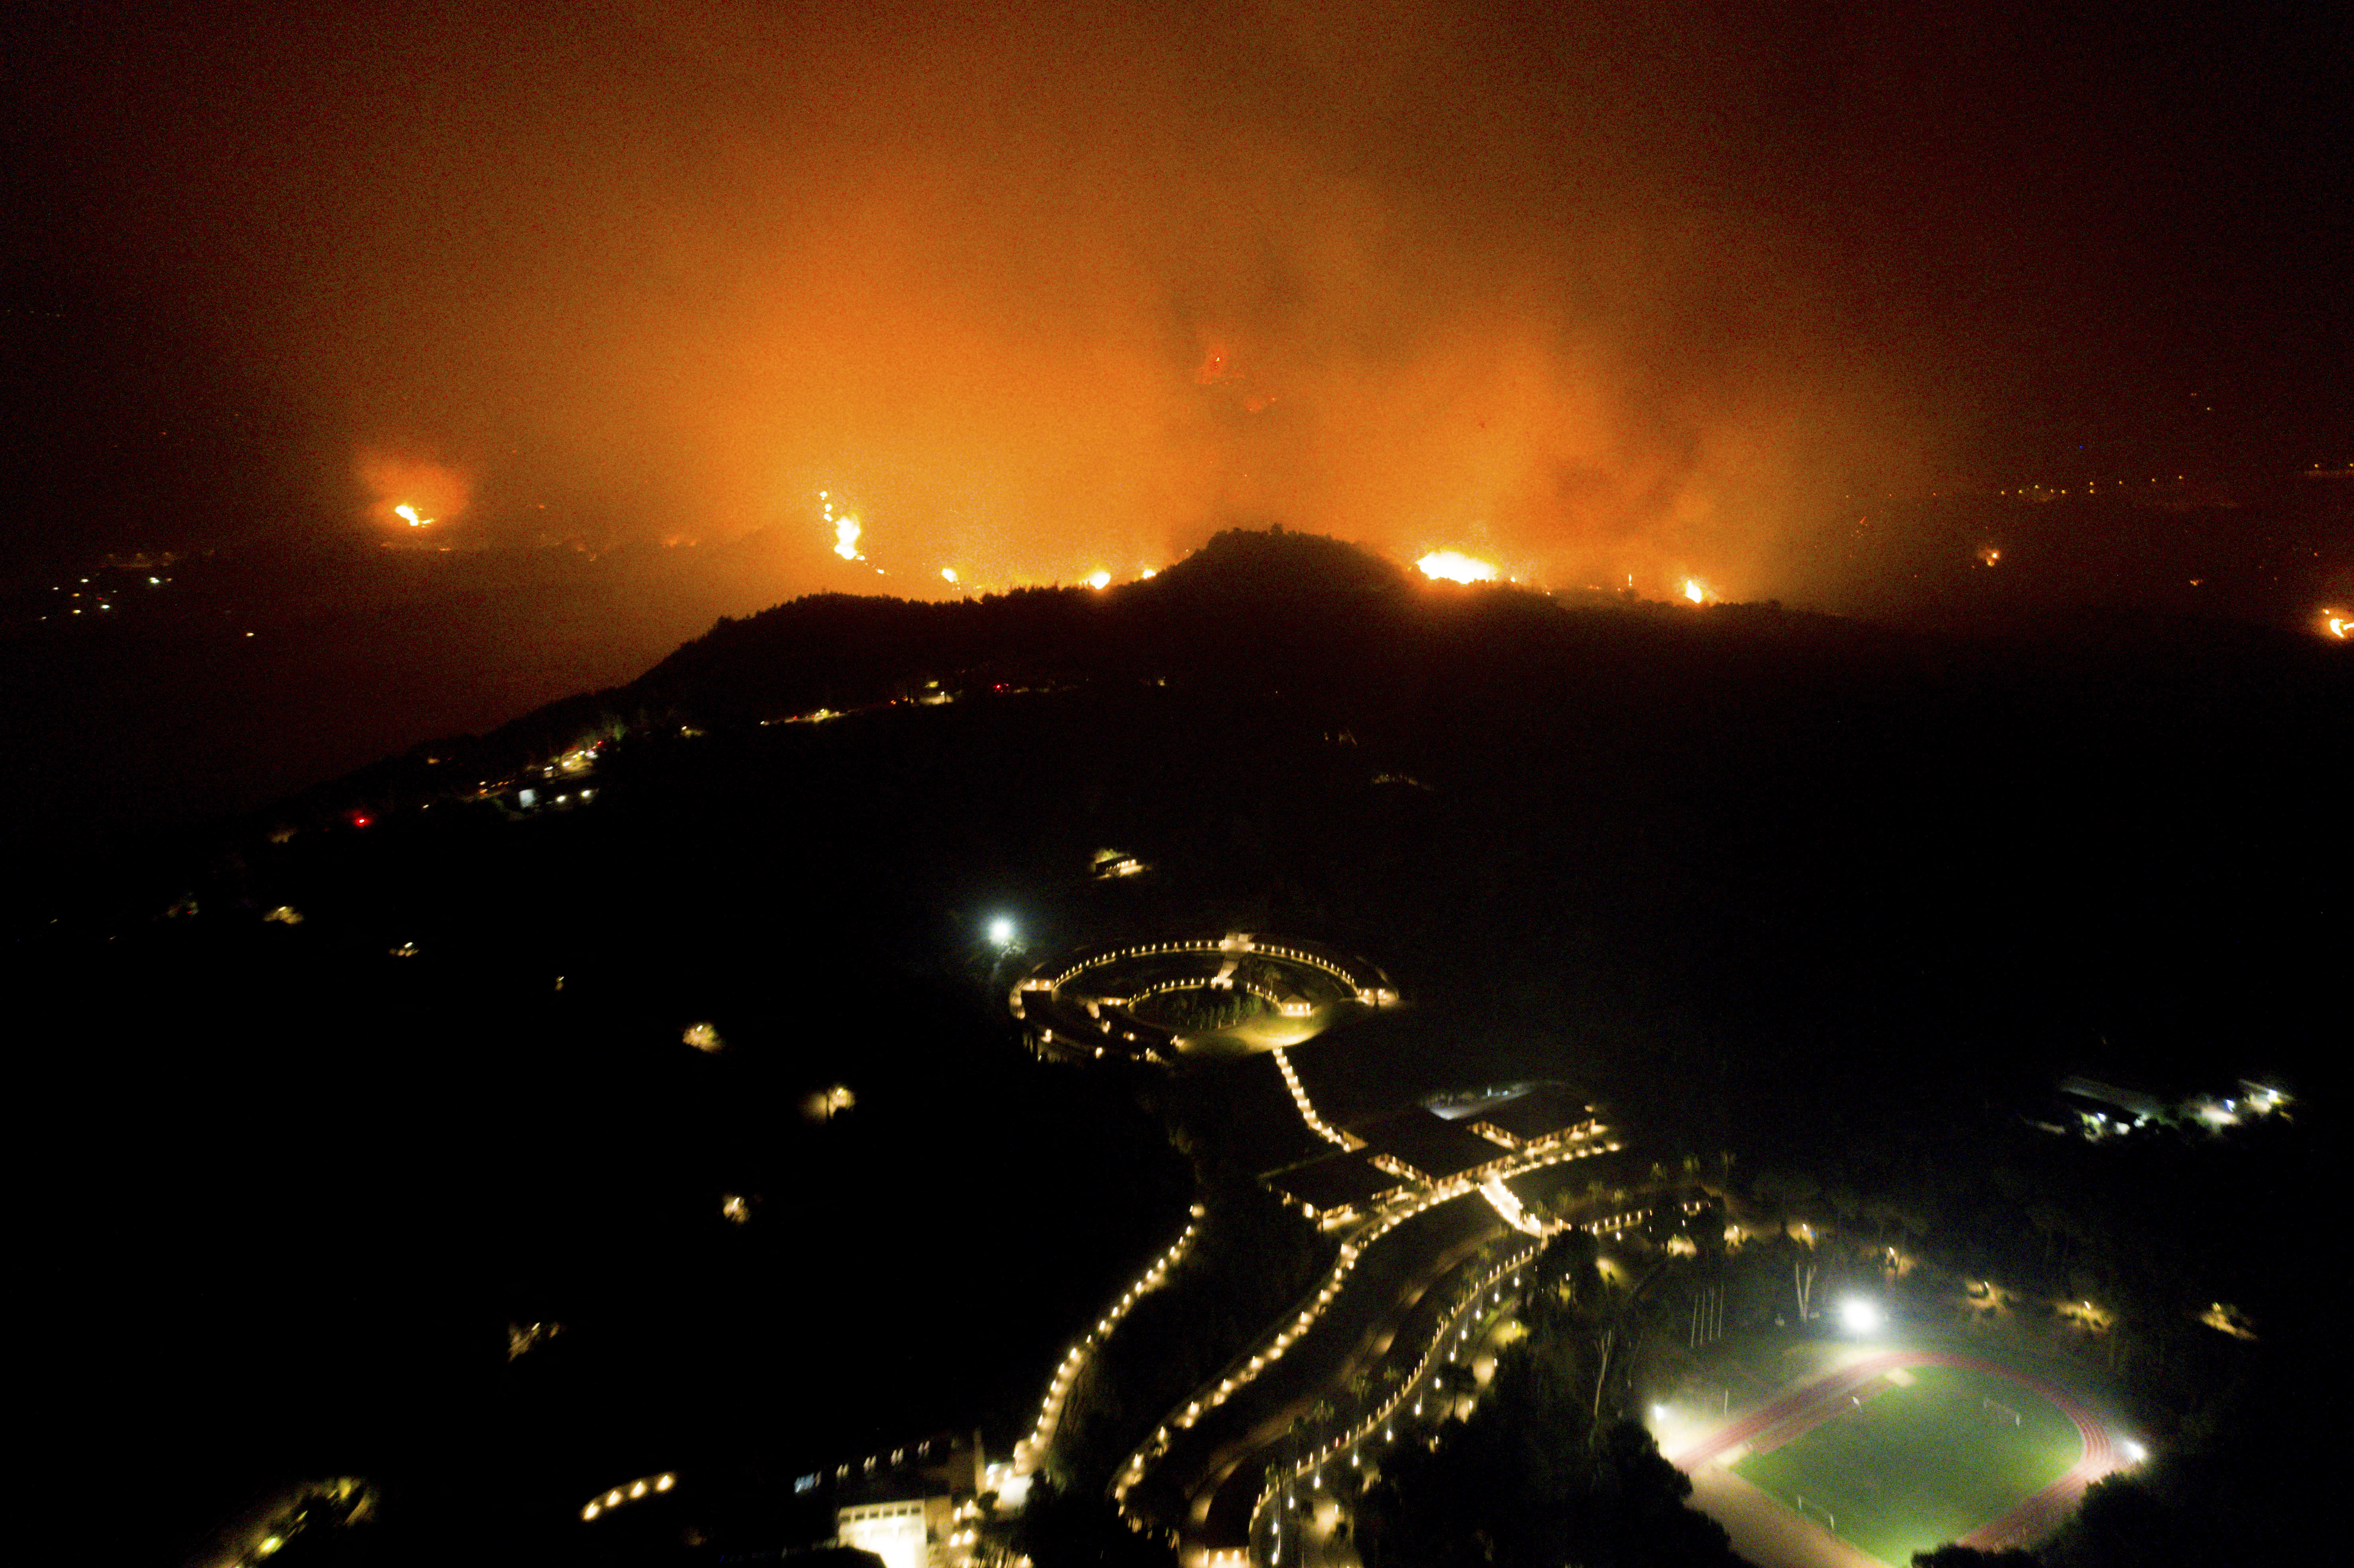 “Un momento muy triste”: El fuego continúa arrasando Grecia (FOTOS)